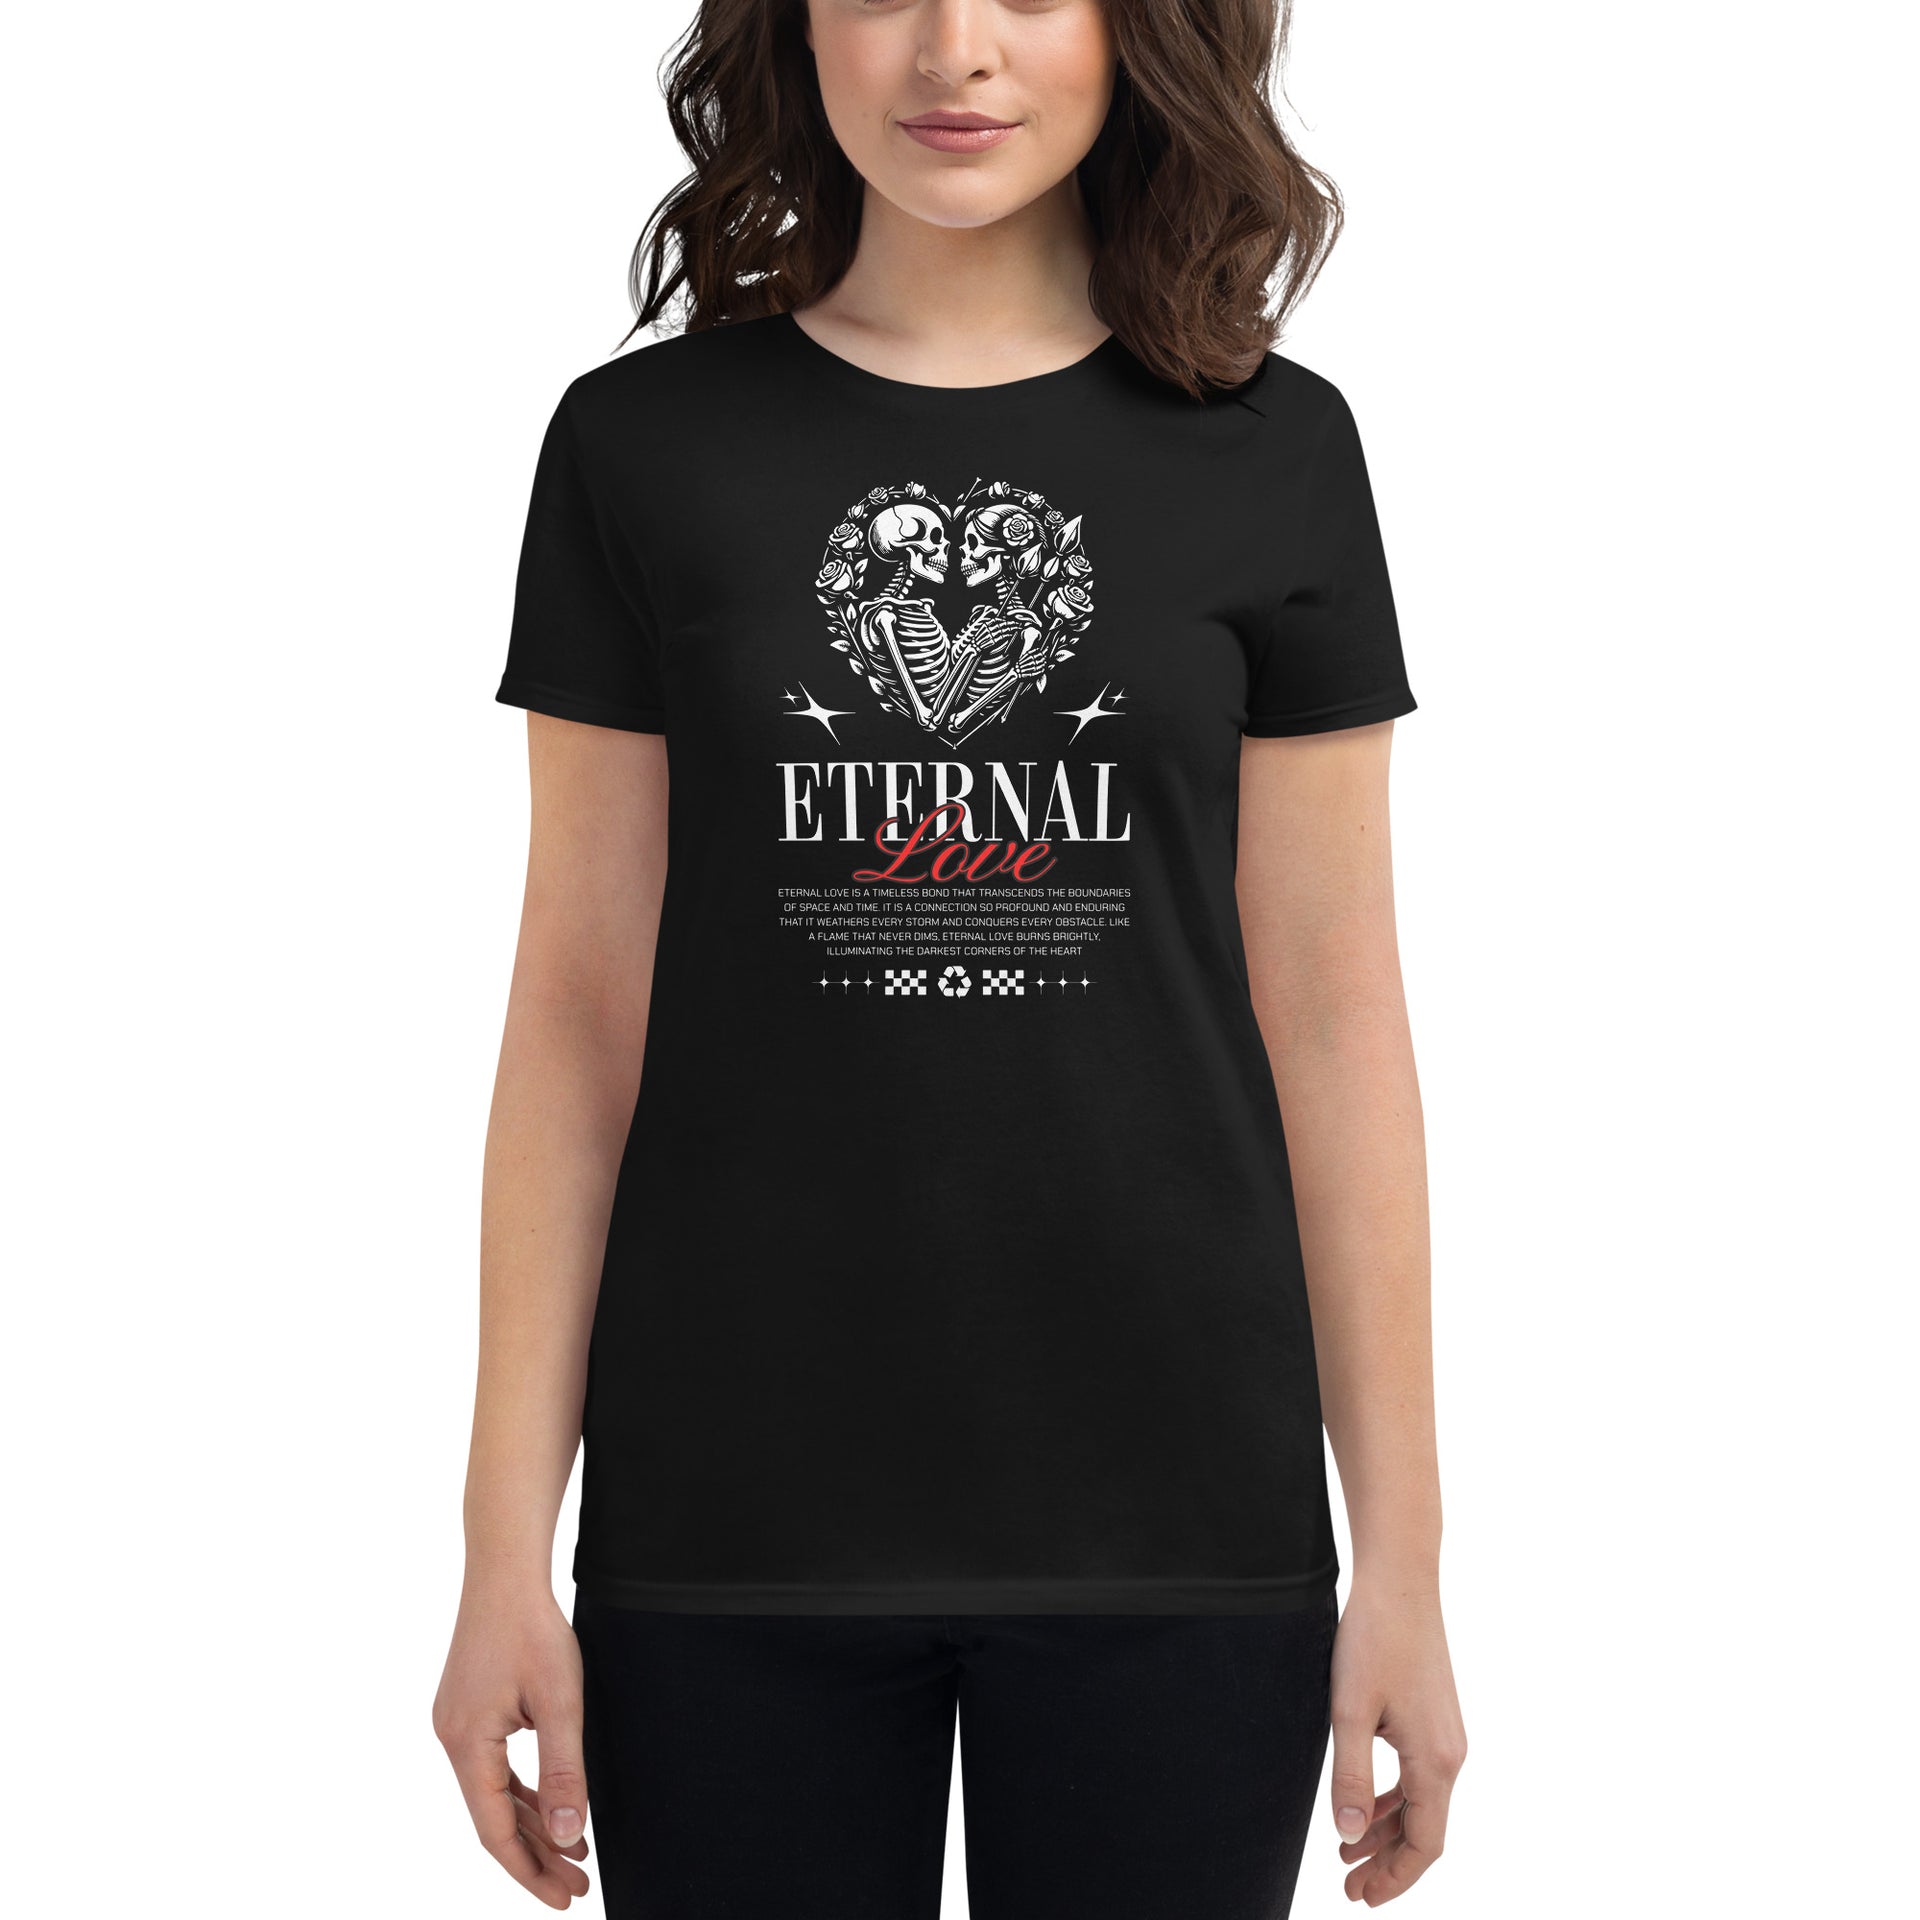 Eternal Love Streetwear Women's T-Shirt